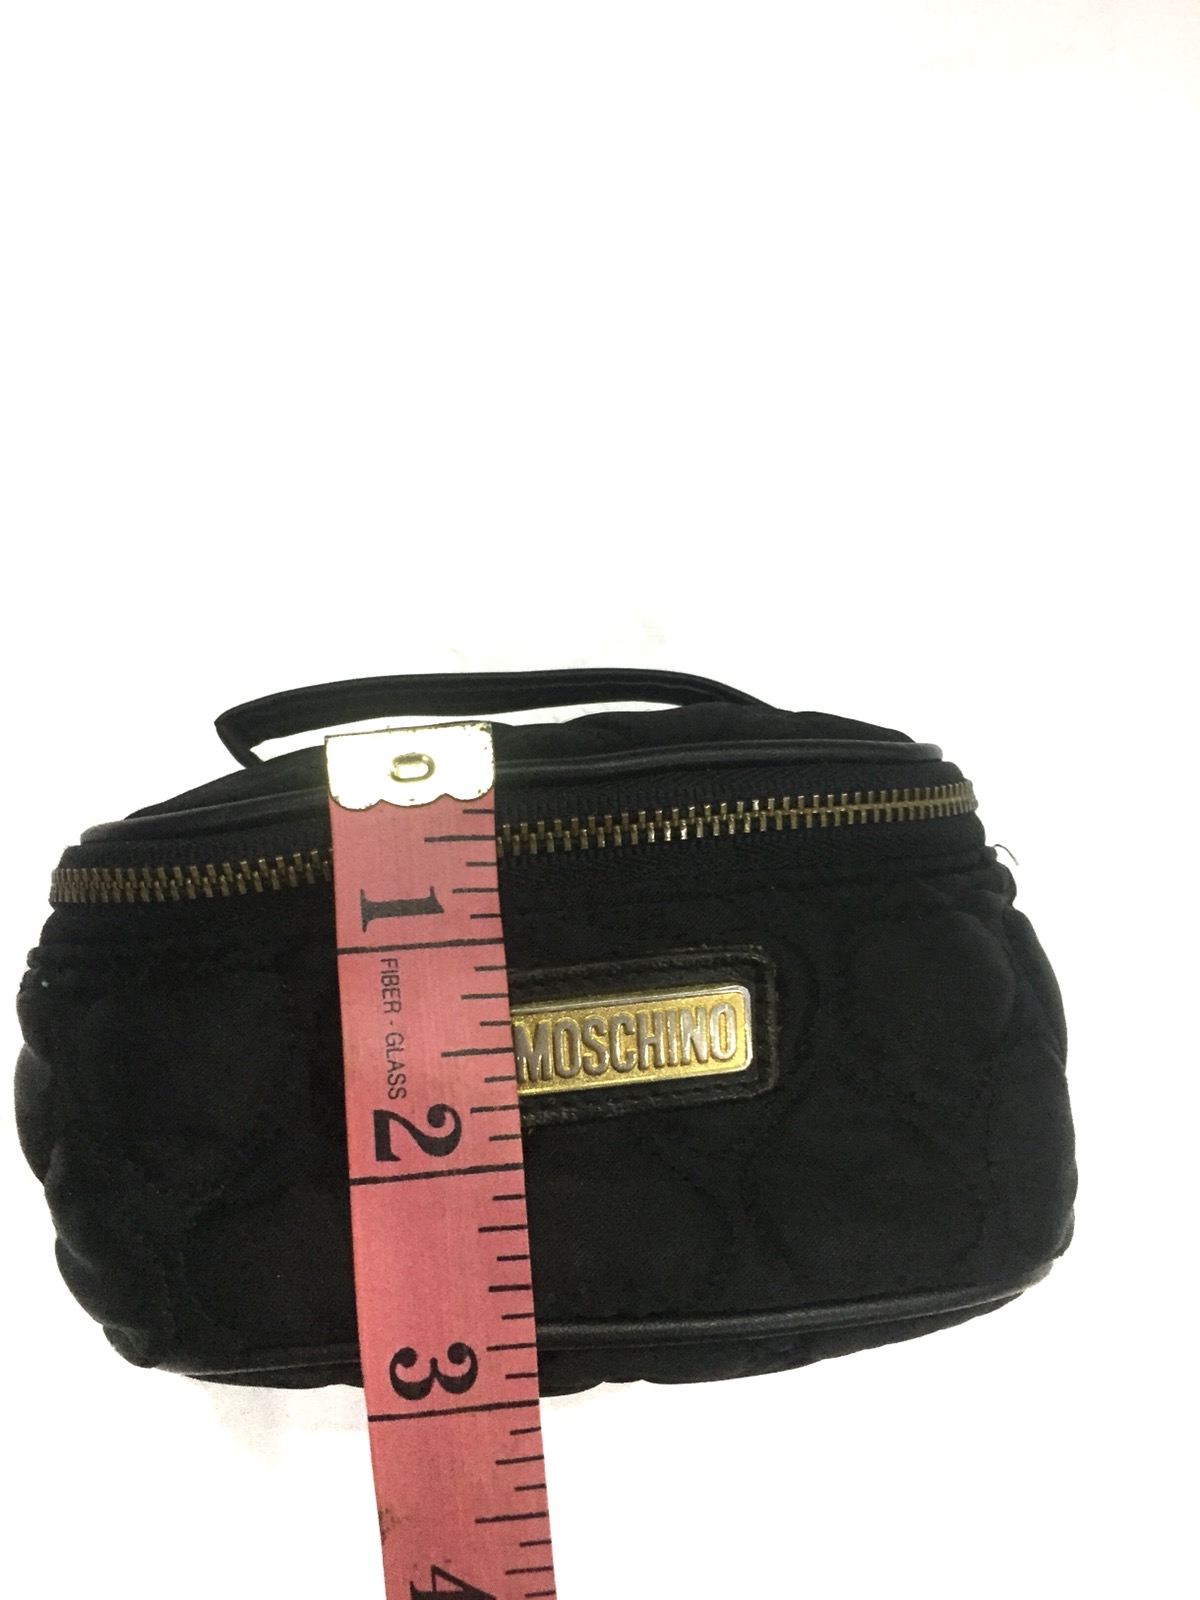 Moschino Small Makeup Bag - 6